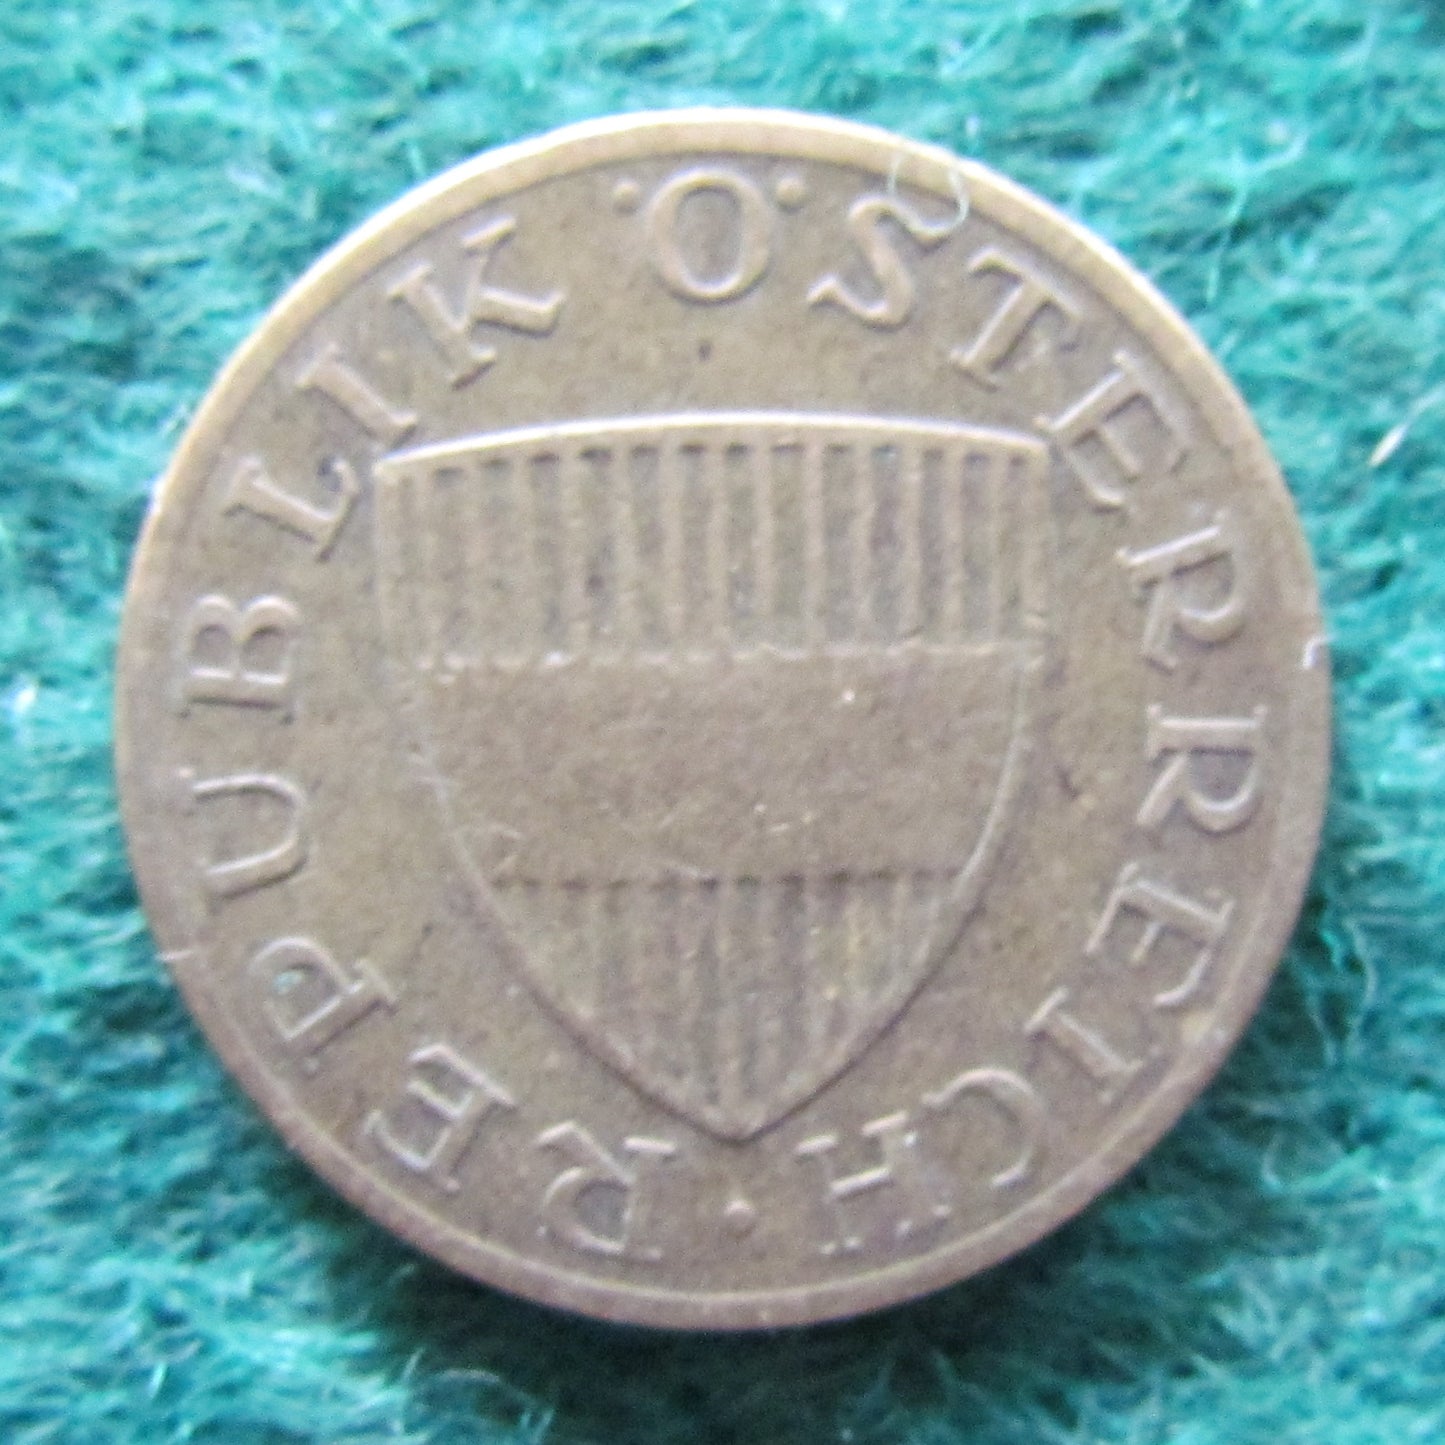 Austria 1959 50 Groschen Coin